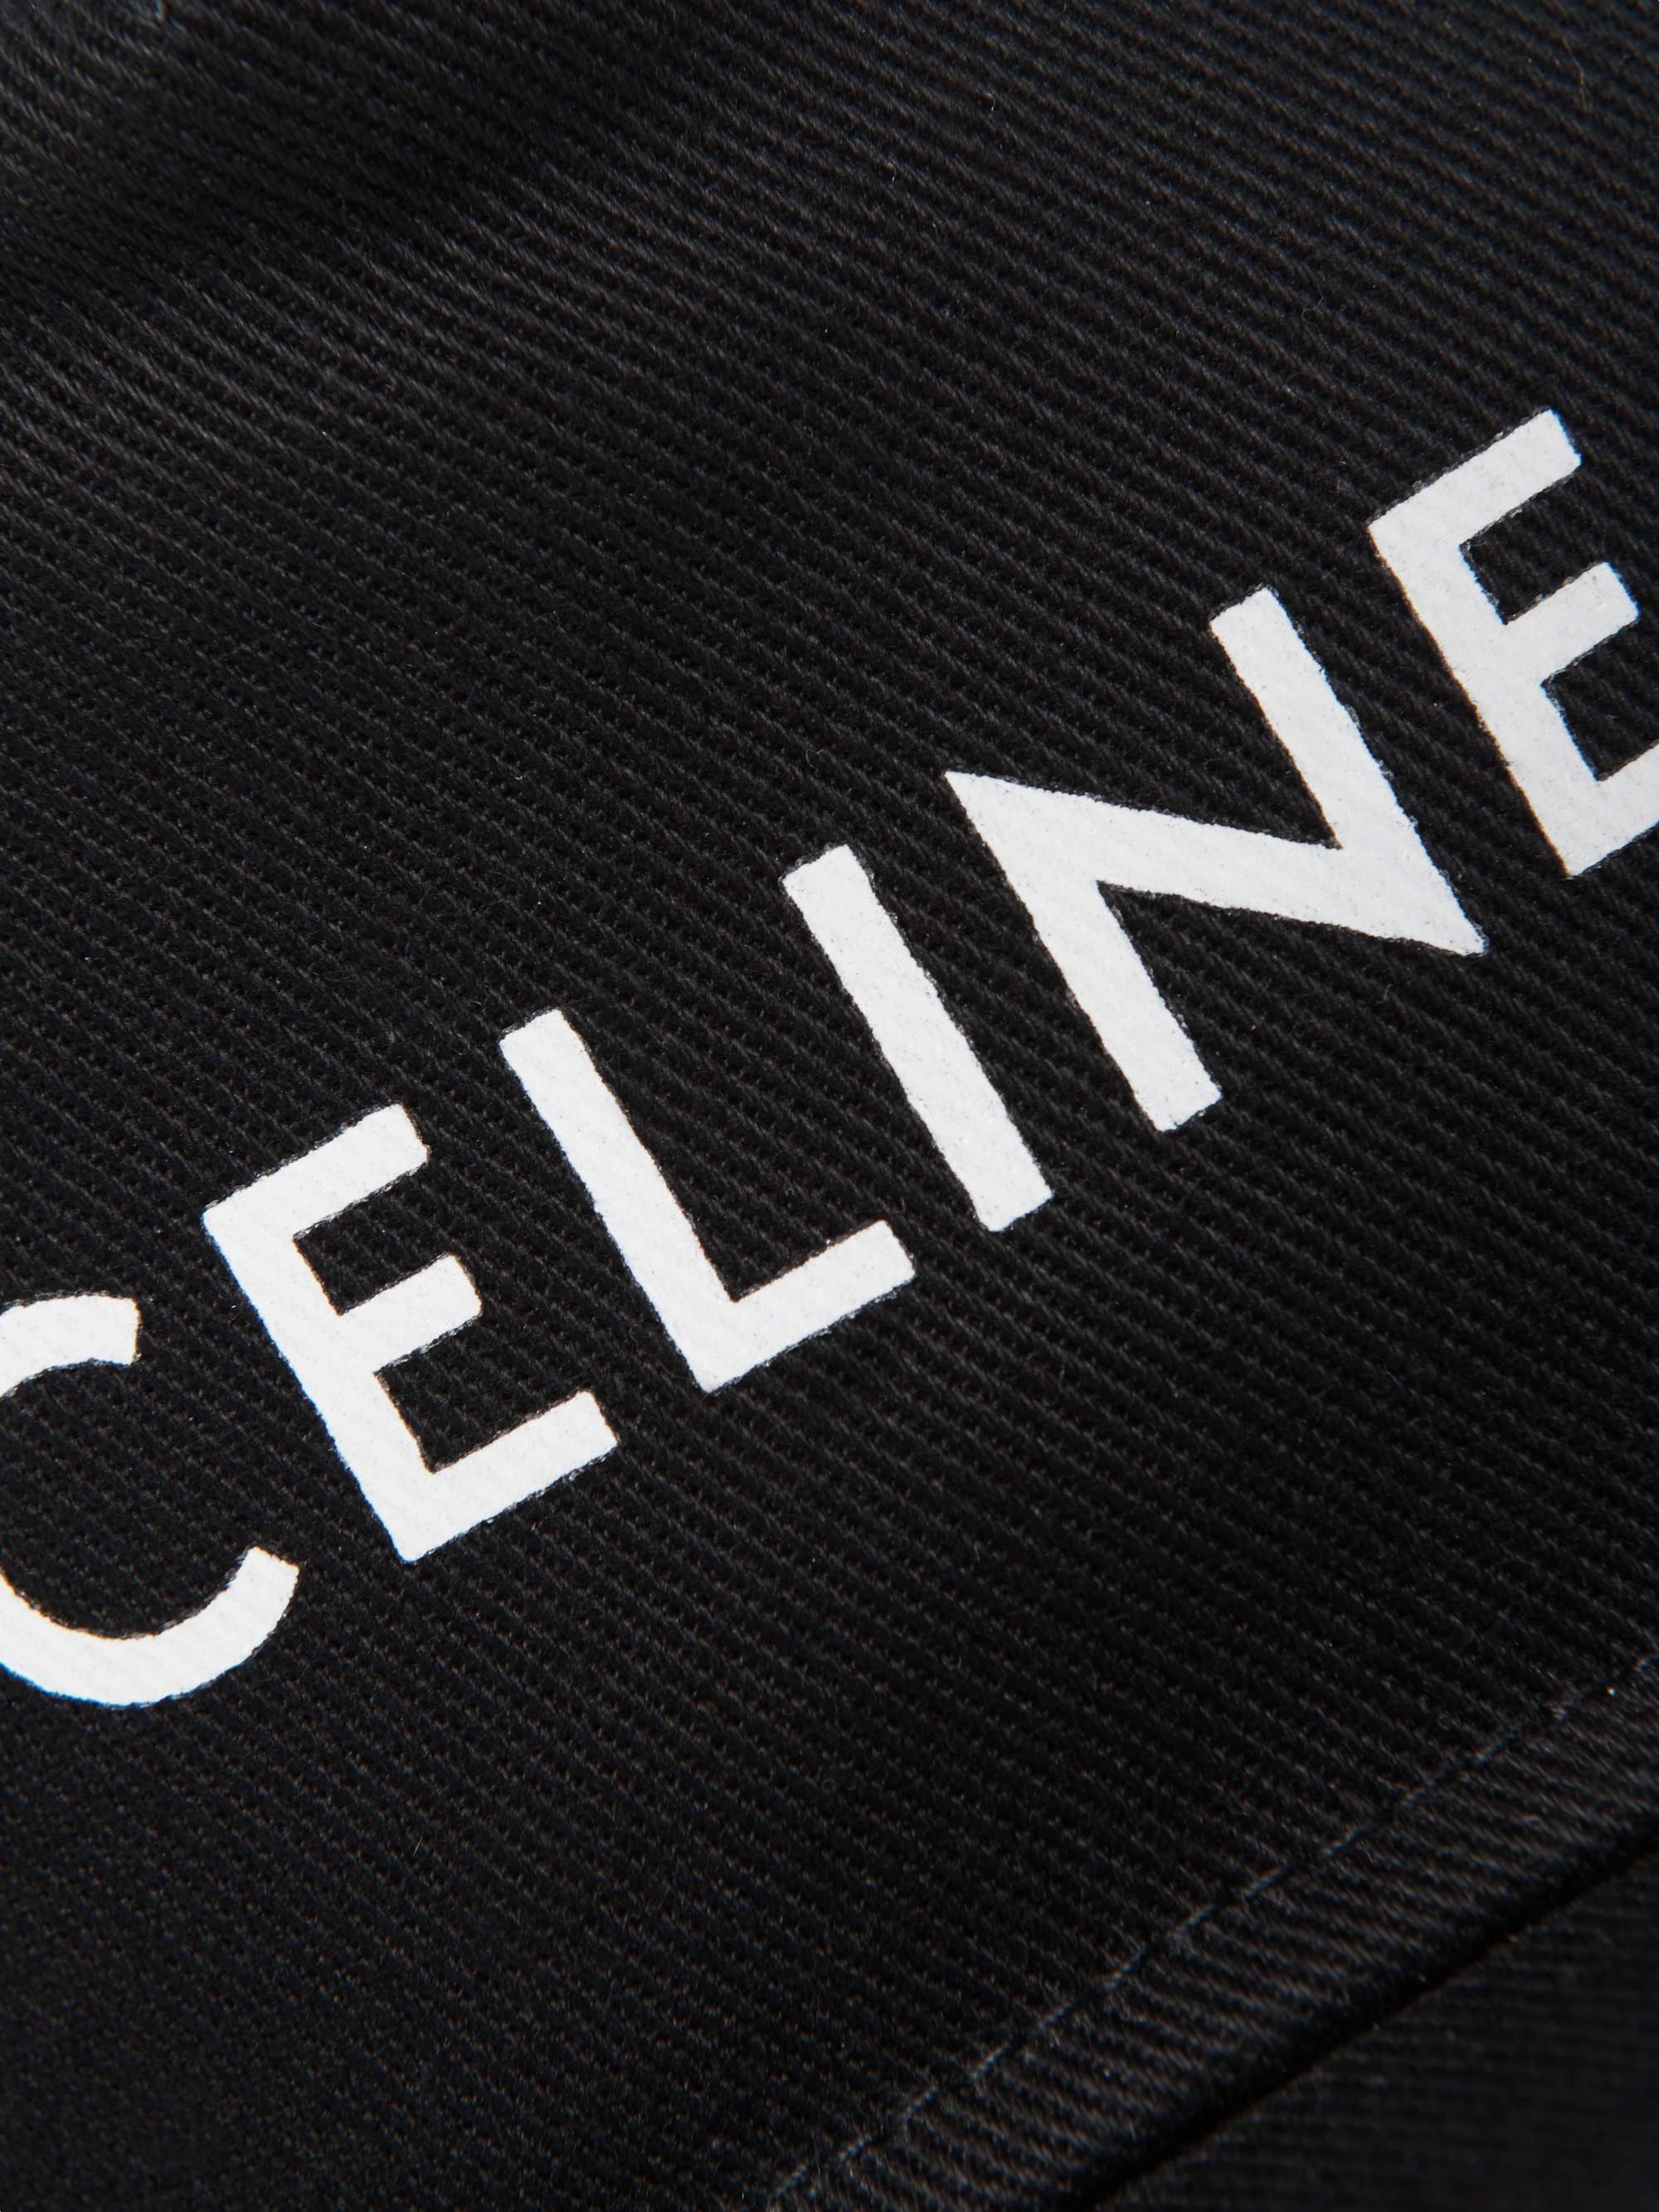 CELINE HOMME Logo-Print Cotton-Blend Drill Baseball Cap